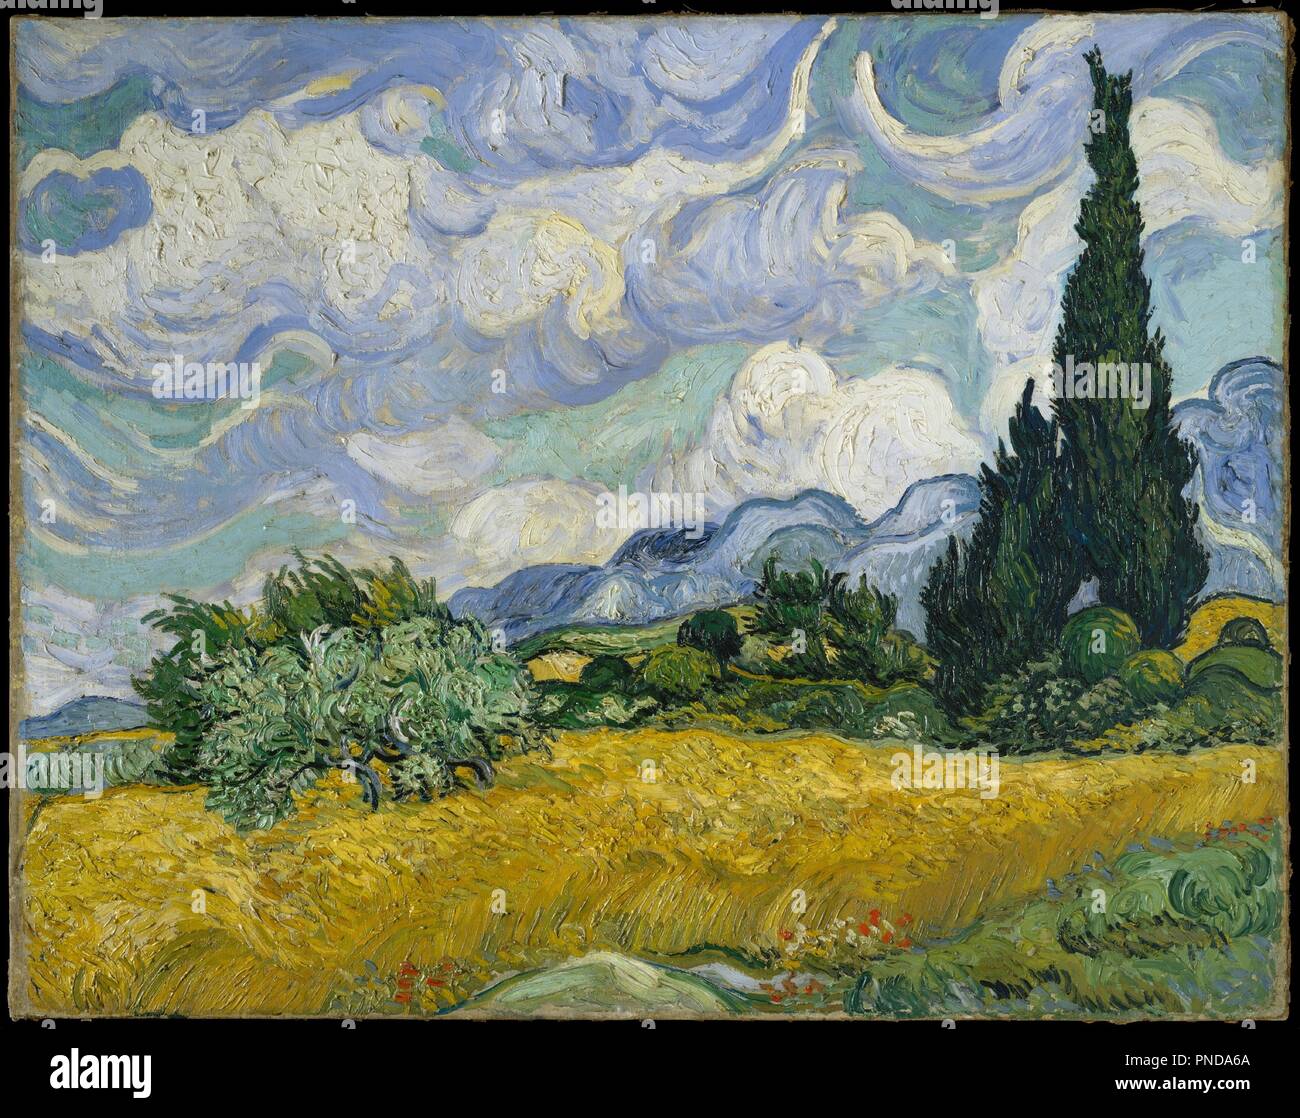 Champ de blé avec cyprès. Artiste : Vincent van Gogh (Néerlandais, Zundert 1853-1890 Auvers-sur-Oise). Dimensions : 28 7/8 × 36 3/4 in. (73,2 × 93,4 cm). Date : 1889. Cyprès gagné du terrain dans l'œuvre de Van Gogh à la fin de juin 1889 lorsqu'il a décidé de consacrer une de ses premières séries de Saint-Rémy à l'immenses arbres. Distinctif pour leur riche impasto, son exubérant sur-le-champ d'études, citons la rencontré's close-up vue verticale de cyprès (49,30) et ce majestueux composition horizontale, qu'il a illustré par reed-pen dessins envoyés à son frère le 2 juillet. Van Gogh considéré le présent travail comme l'un des Banque D'Images